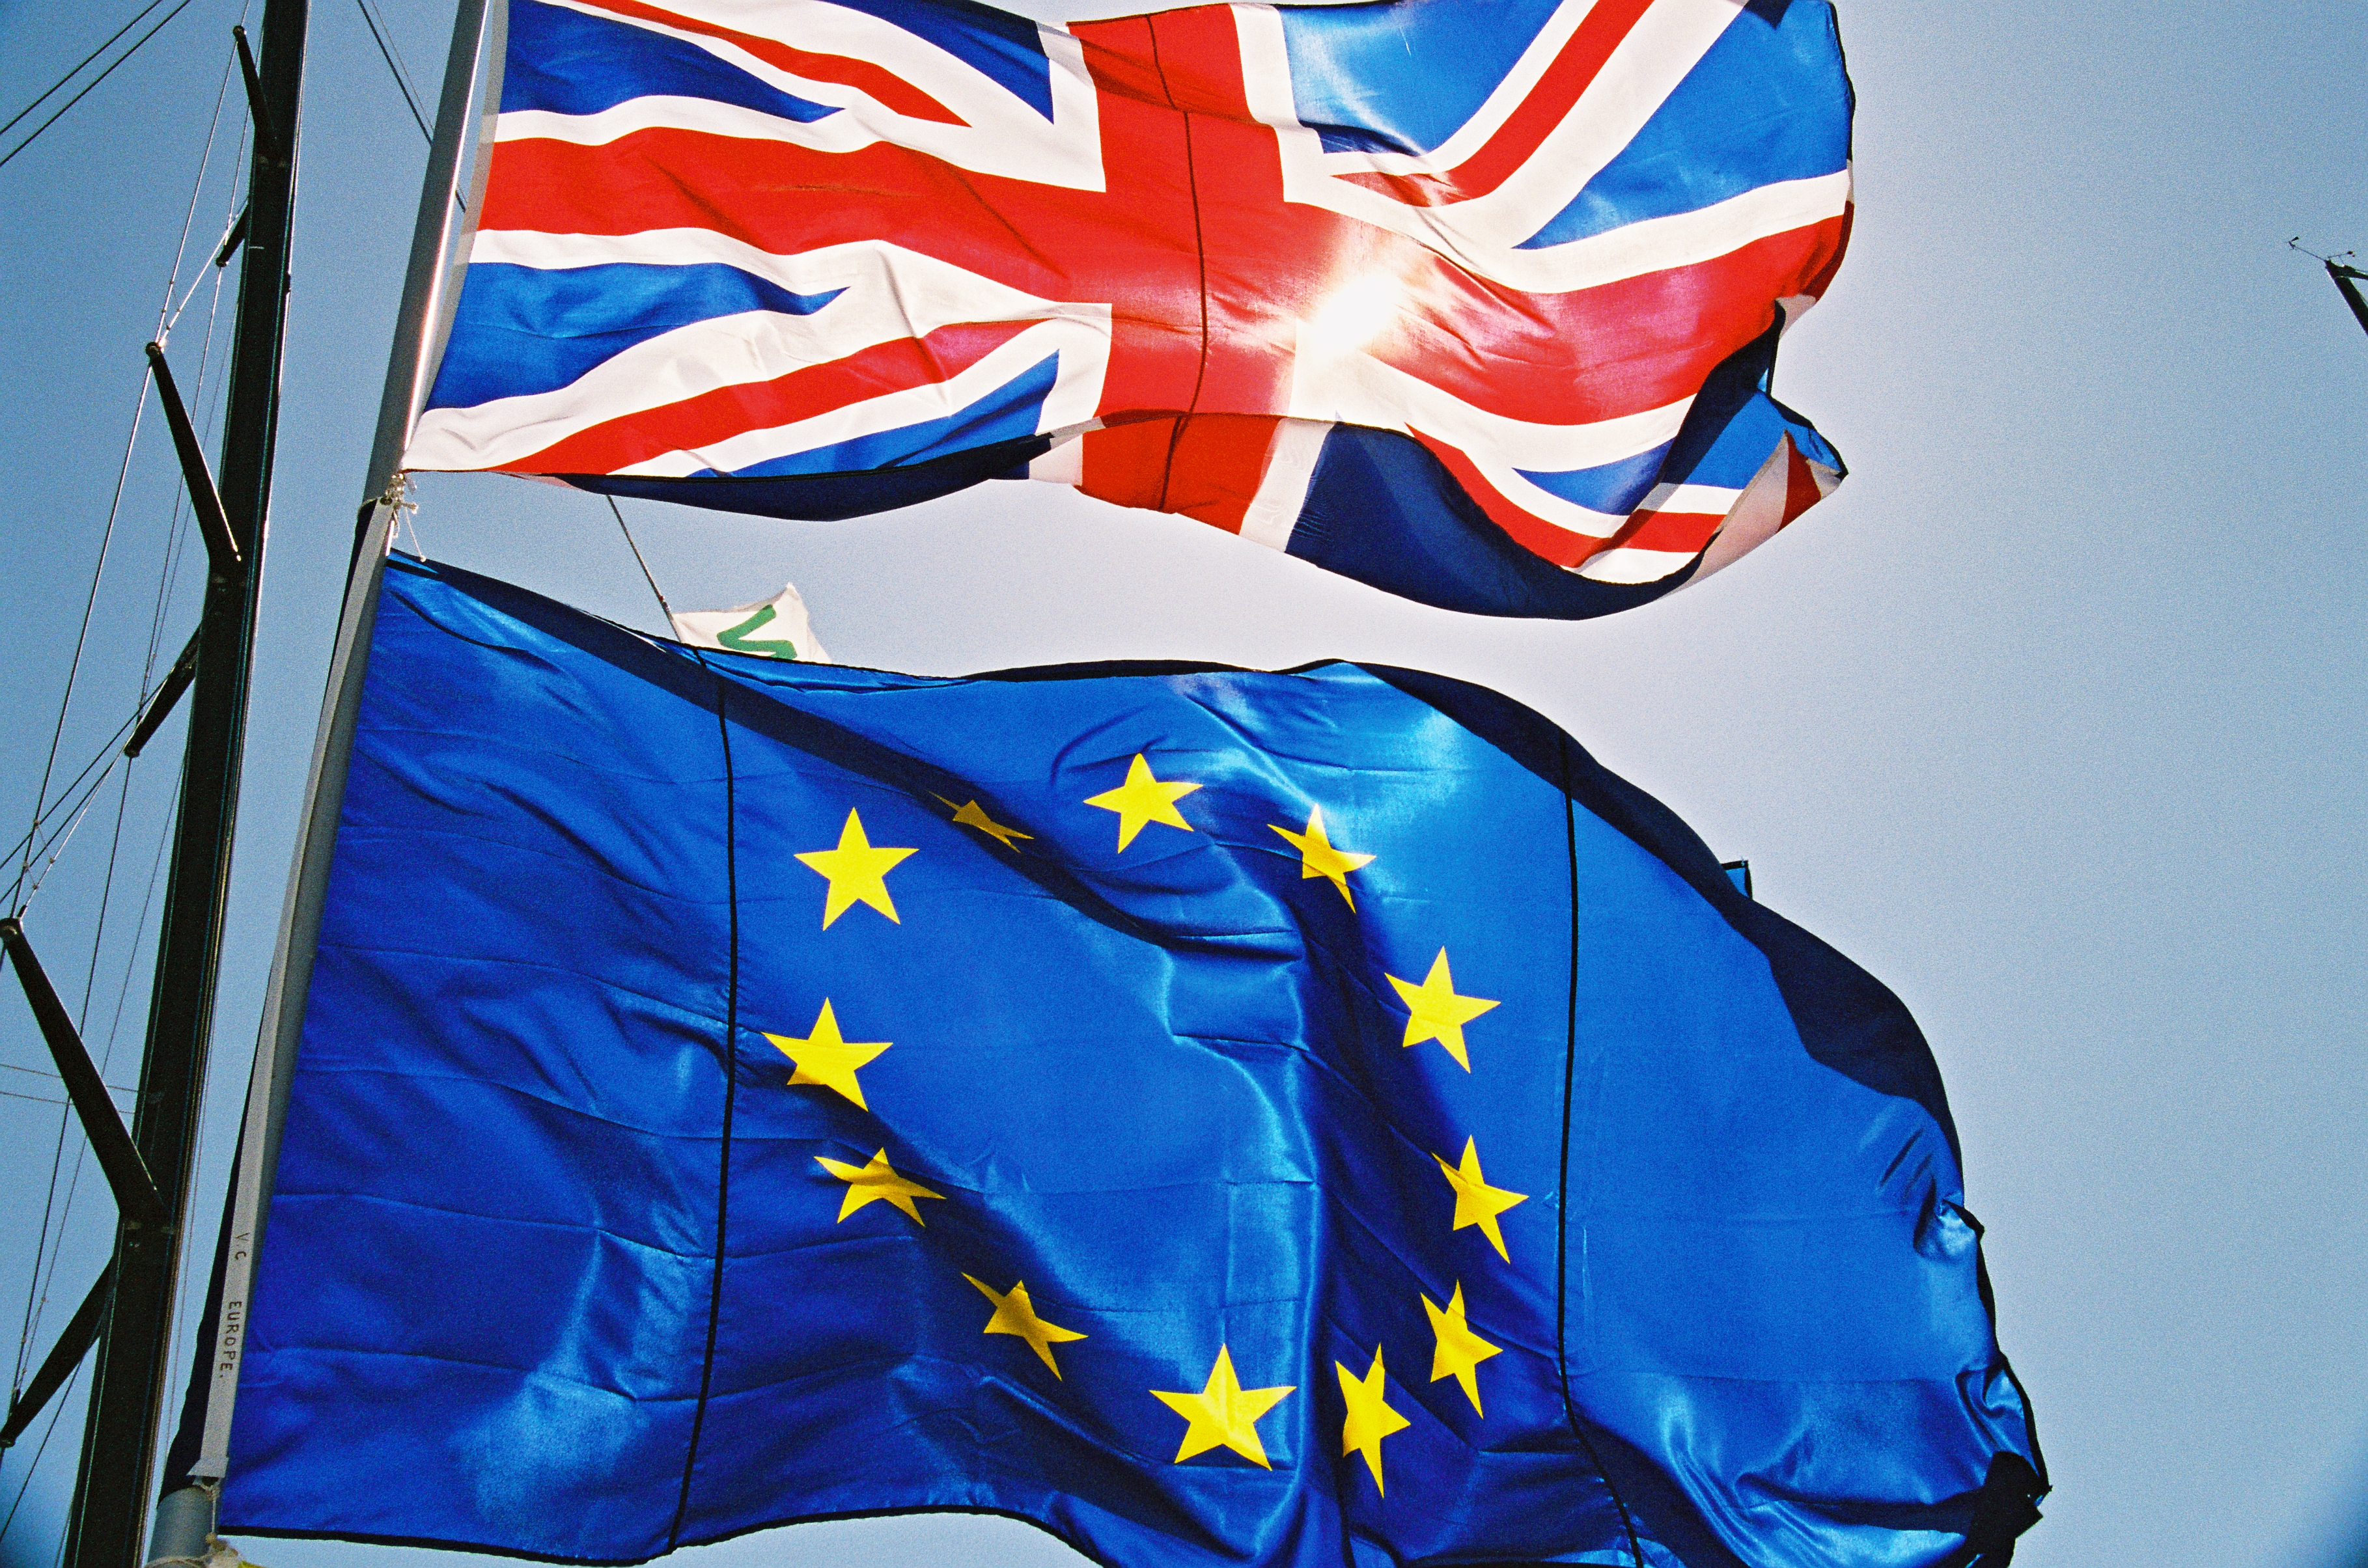 Flaga Wielkiej Brytanii i flaga Unii Europejskiej na tle błękitnego nieba